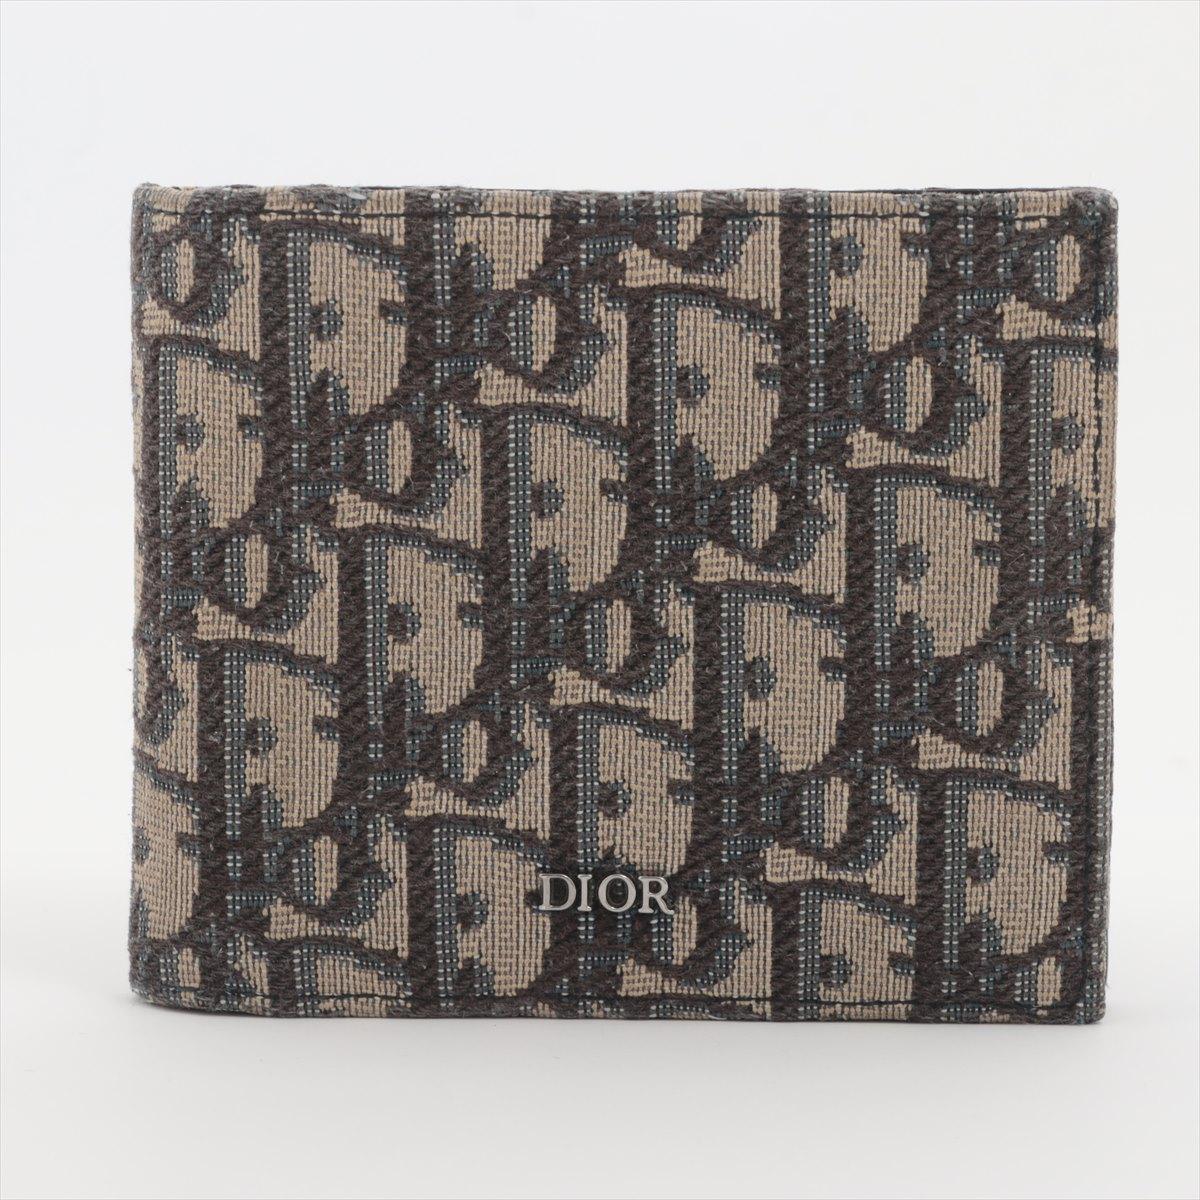 Le portefeuille Dior Oblique Canvas Leather Bi-fold en bleu marine est un accessoire sophistiqué et intemporel qui met en valeur les éléments de design emblématiques de Dior. Fabriqué en toile durable et orné du monogramme signature Oblique, ce